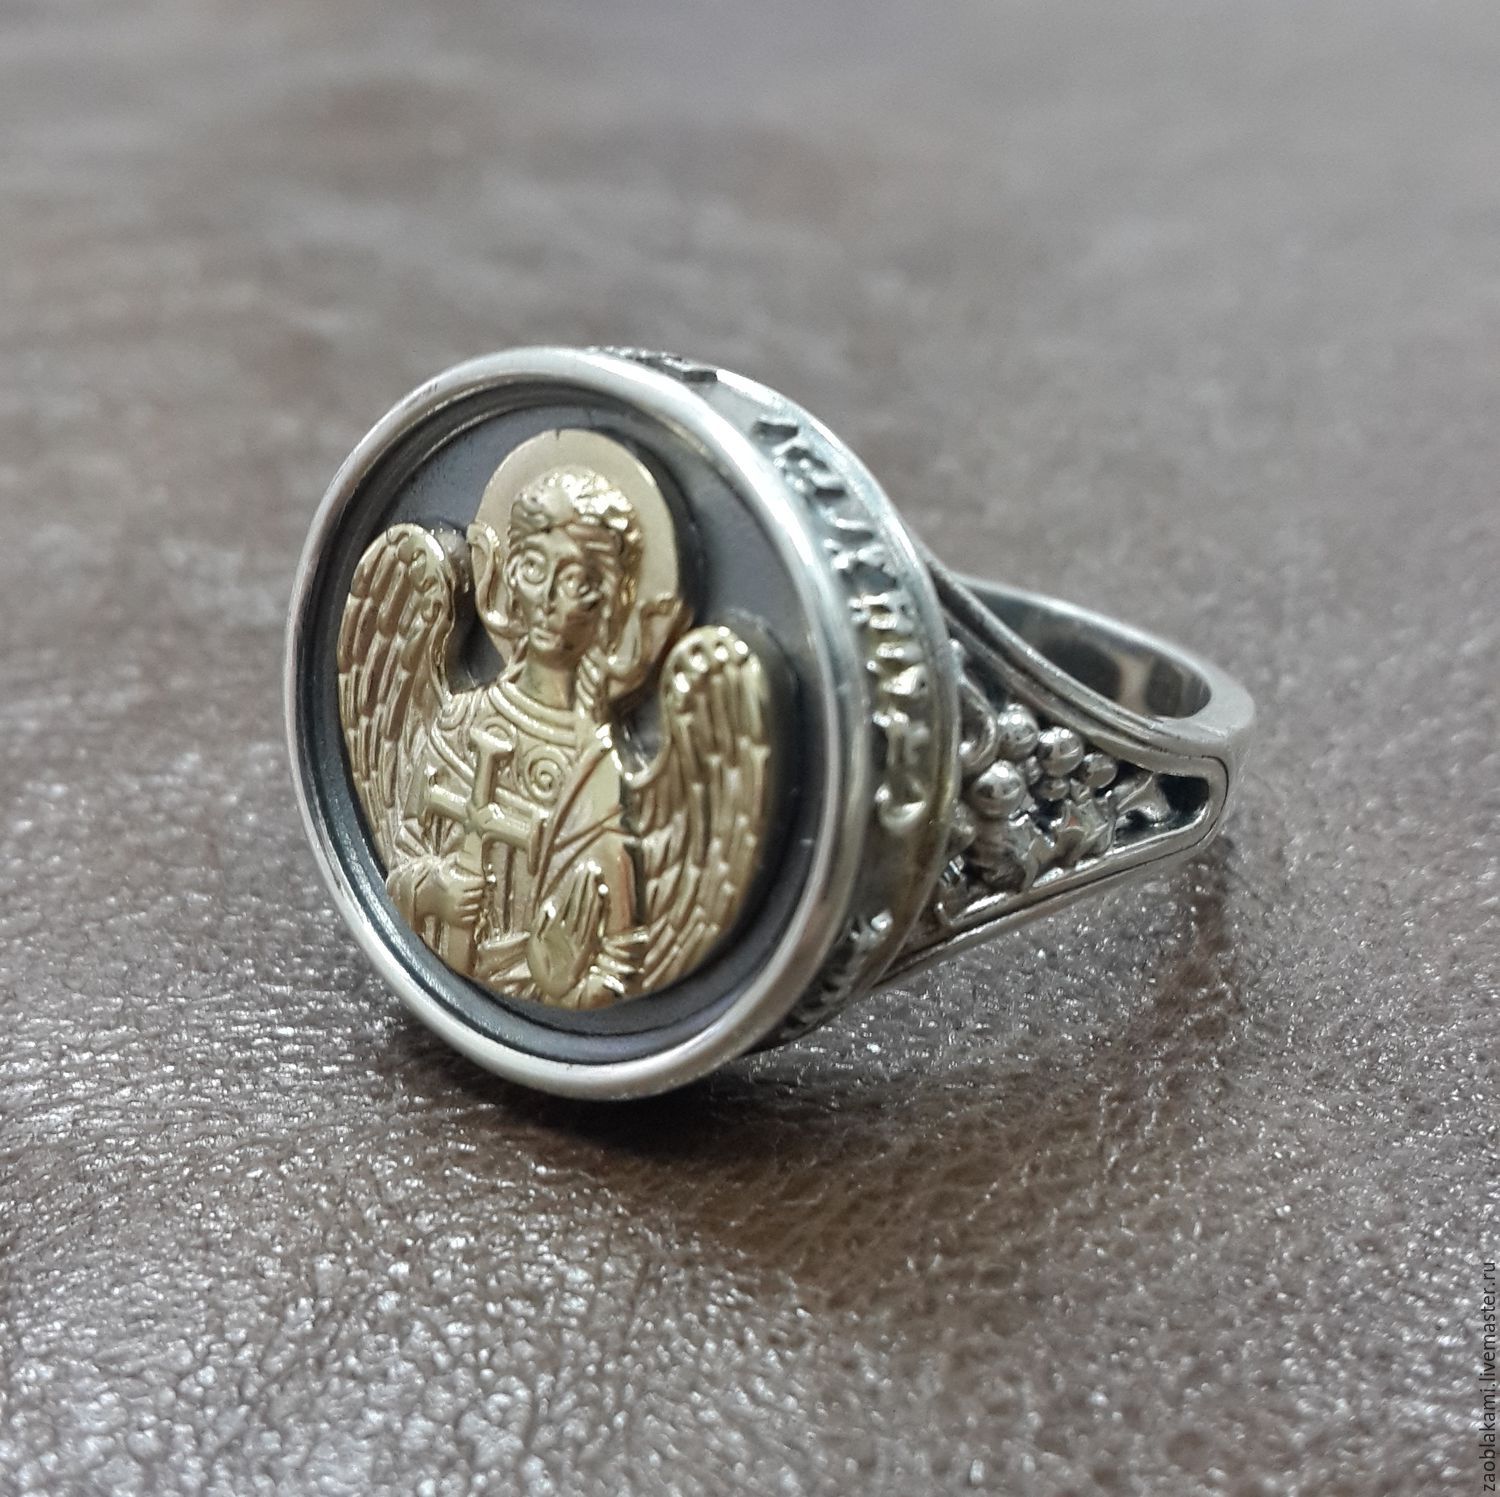 Православное серебро купить. Кольцо печатка серебро ангел хранитель. Печатка ангел хранитель серебро. Серебряное кольцо с позолотой "ангел-хранитель". Охранное кольцо ангел хранитель.